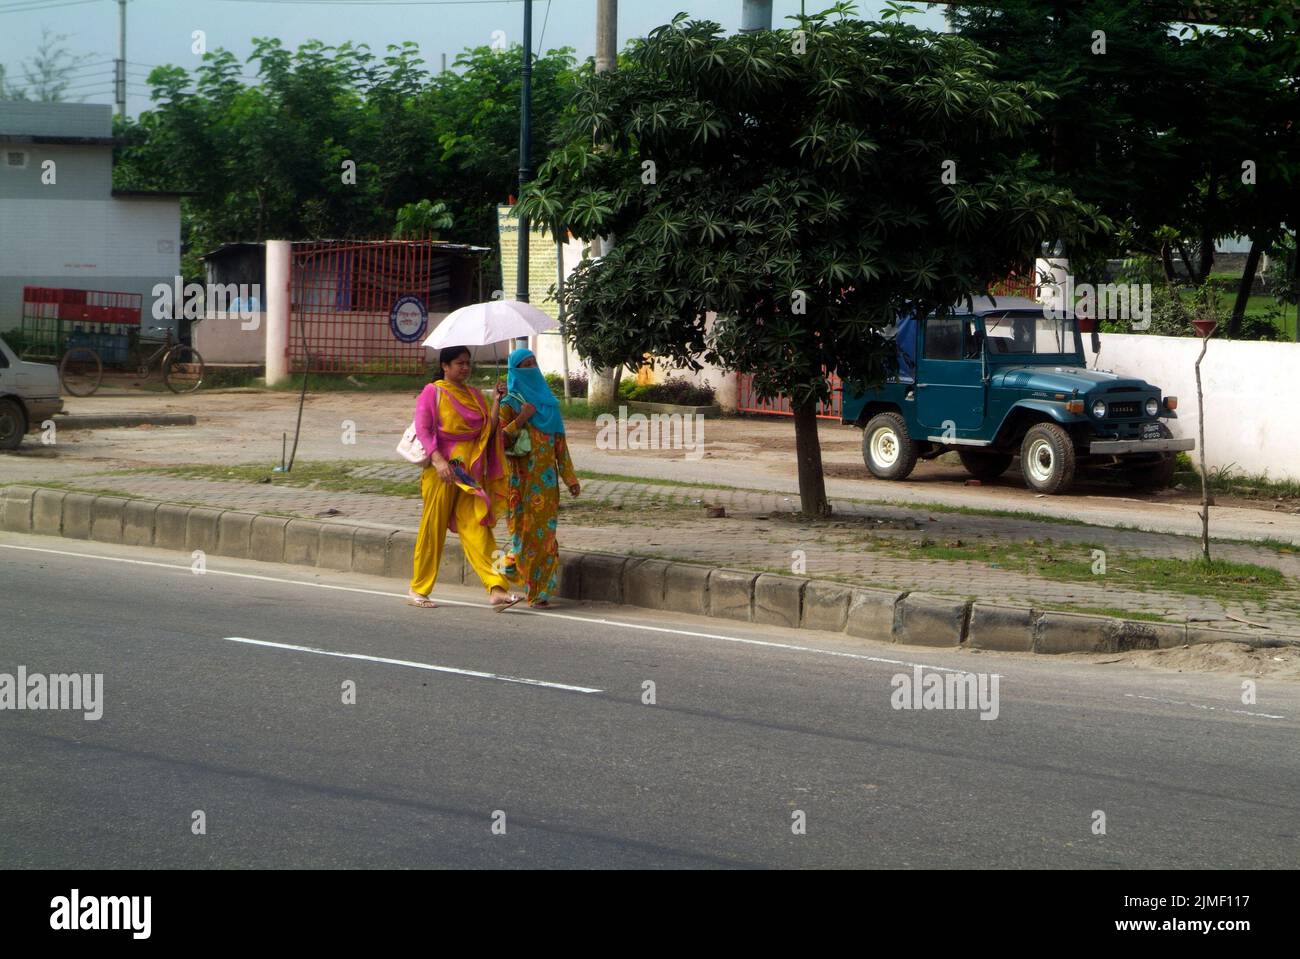 Dhaka, Bangladesh - 17 septembre 2007 : deux femmes non identifiées avec des parasols en vêtements traditionnels, dont une portant un voile pour des raisons religieuses Banque D'Images